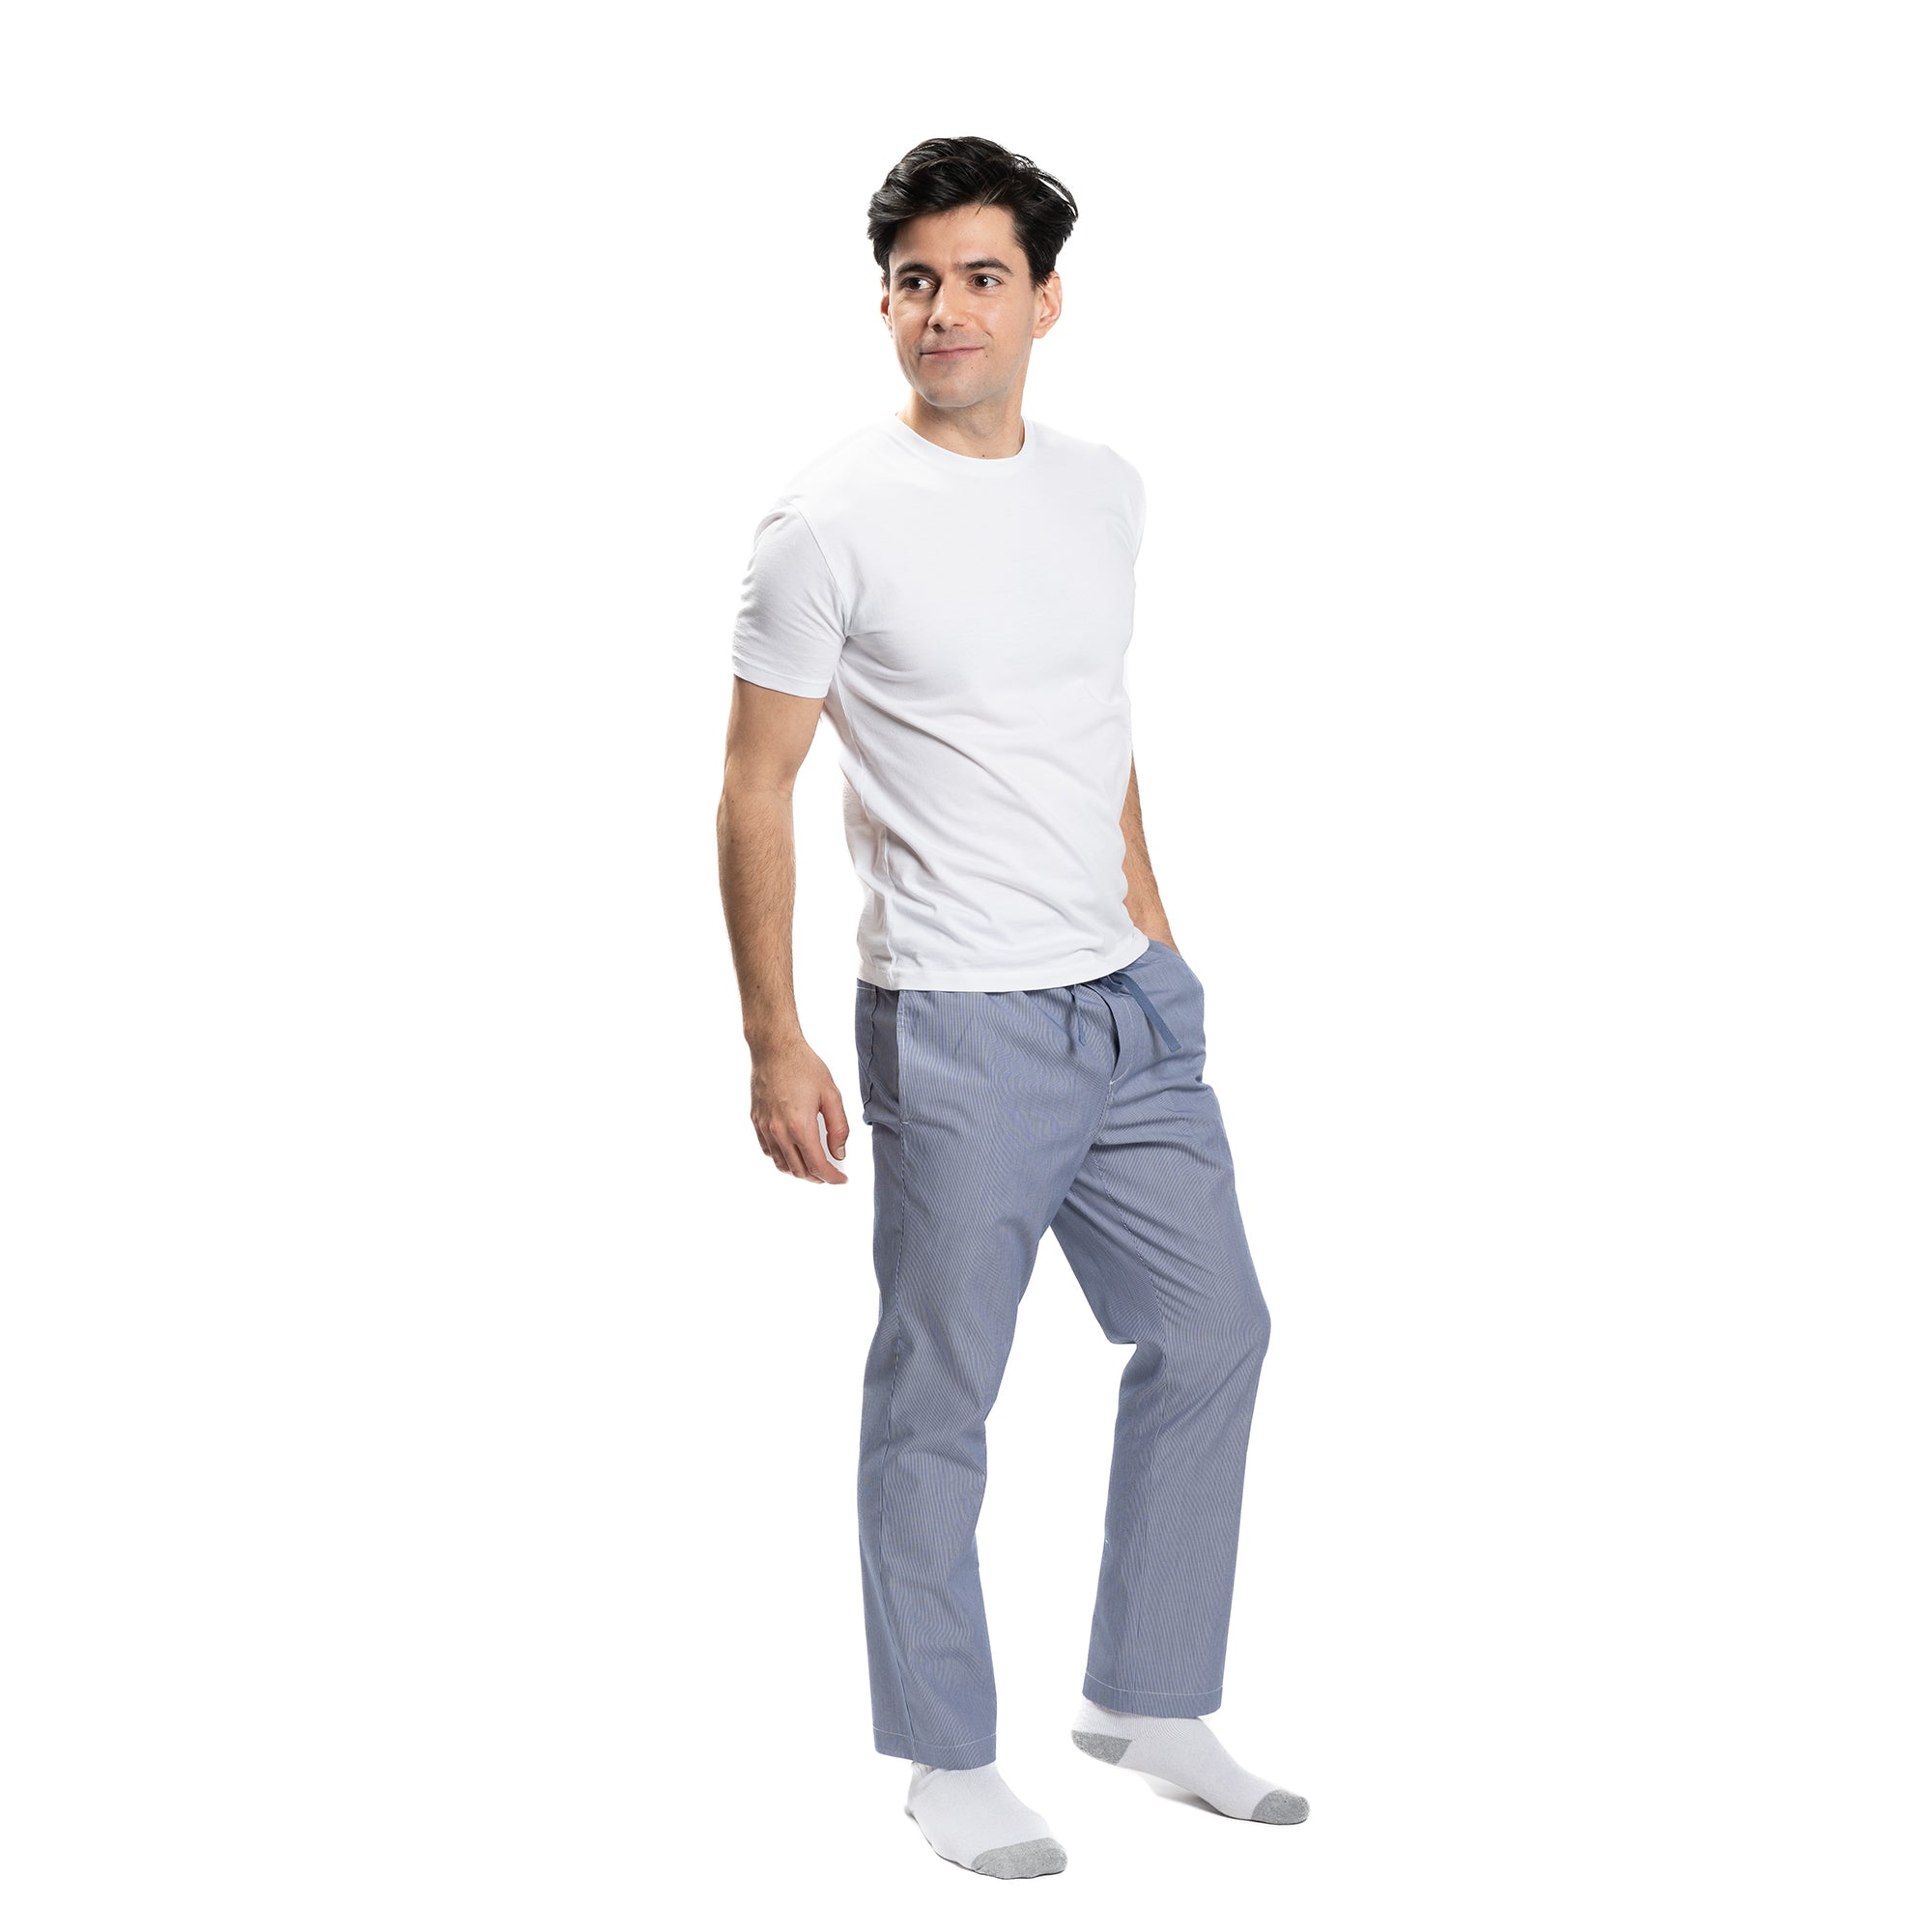 Pajama Pants - Navy Pinstripe